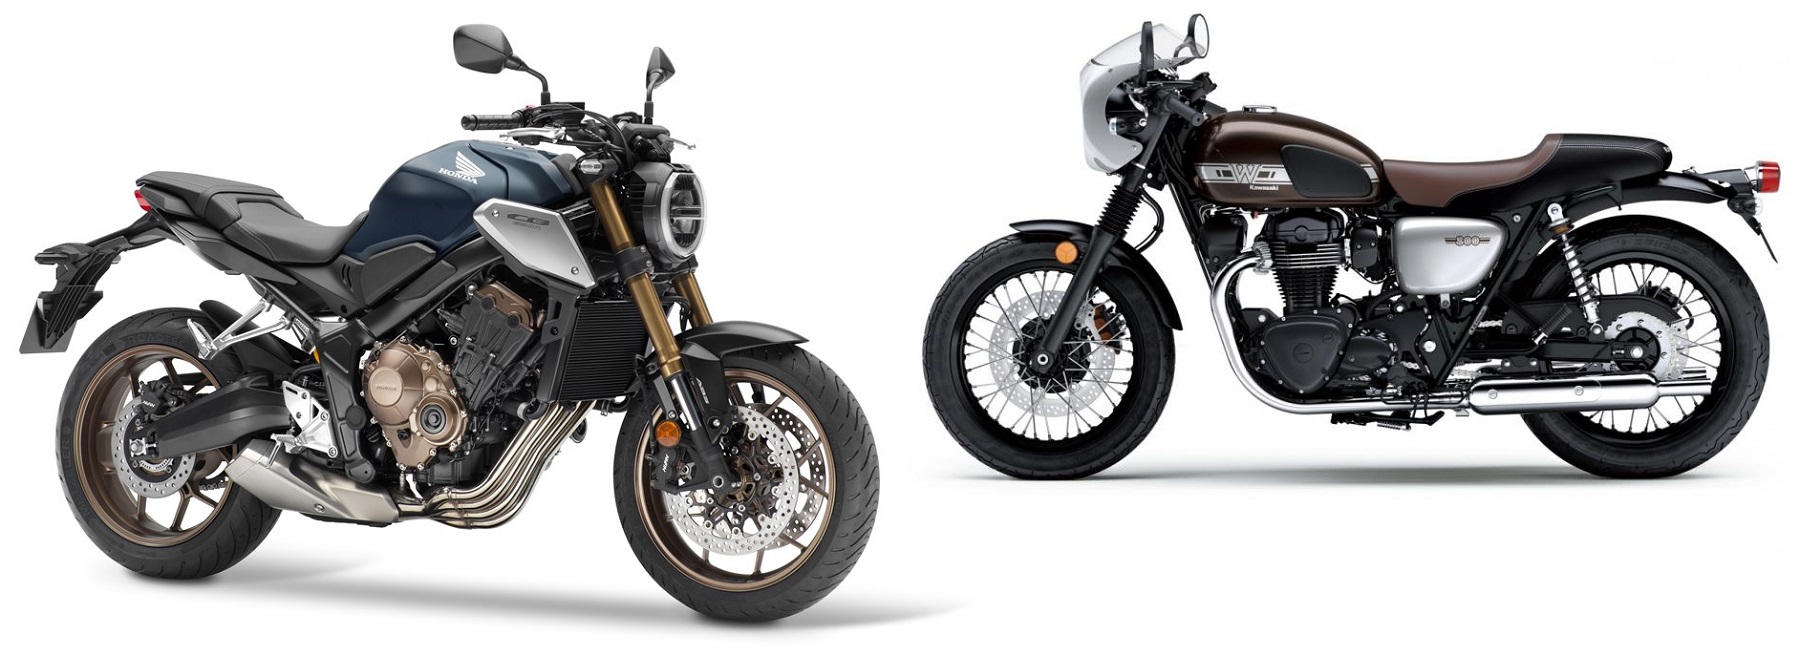 Pilih New Kawasaki W800 atau Honda CB650R 2019?